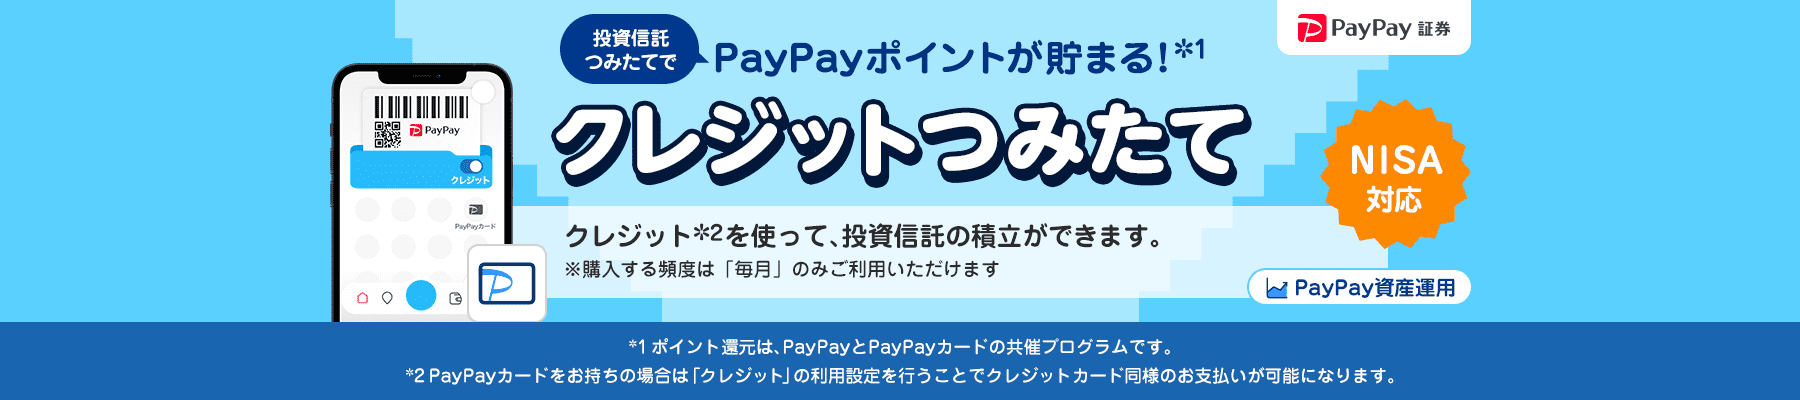 PayPay証券 PayPay資産運用 投資信託つみたてでPayPayポイントが貯まる！＊1 クレジットつみたて NISA対応 クレジット＊2を使って、投資信託の積立ができます。 ※購入する頻度は「毎月」のみご利用いただけます ＊1ポイント還元は、PayPayとPayPayカードの共催プログラムです。＊2PayPayカードをお持ちの場合は「クレジット」の利用設定を行うことでクレジットカード同様のお支払いが可能になります。